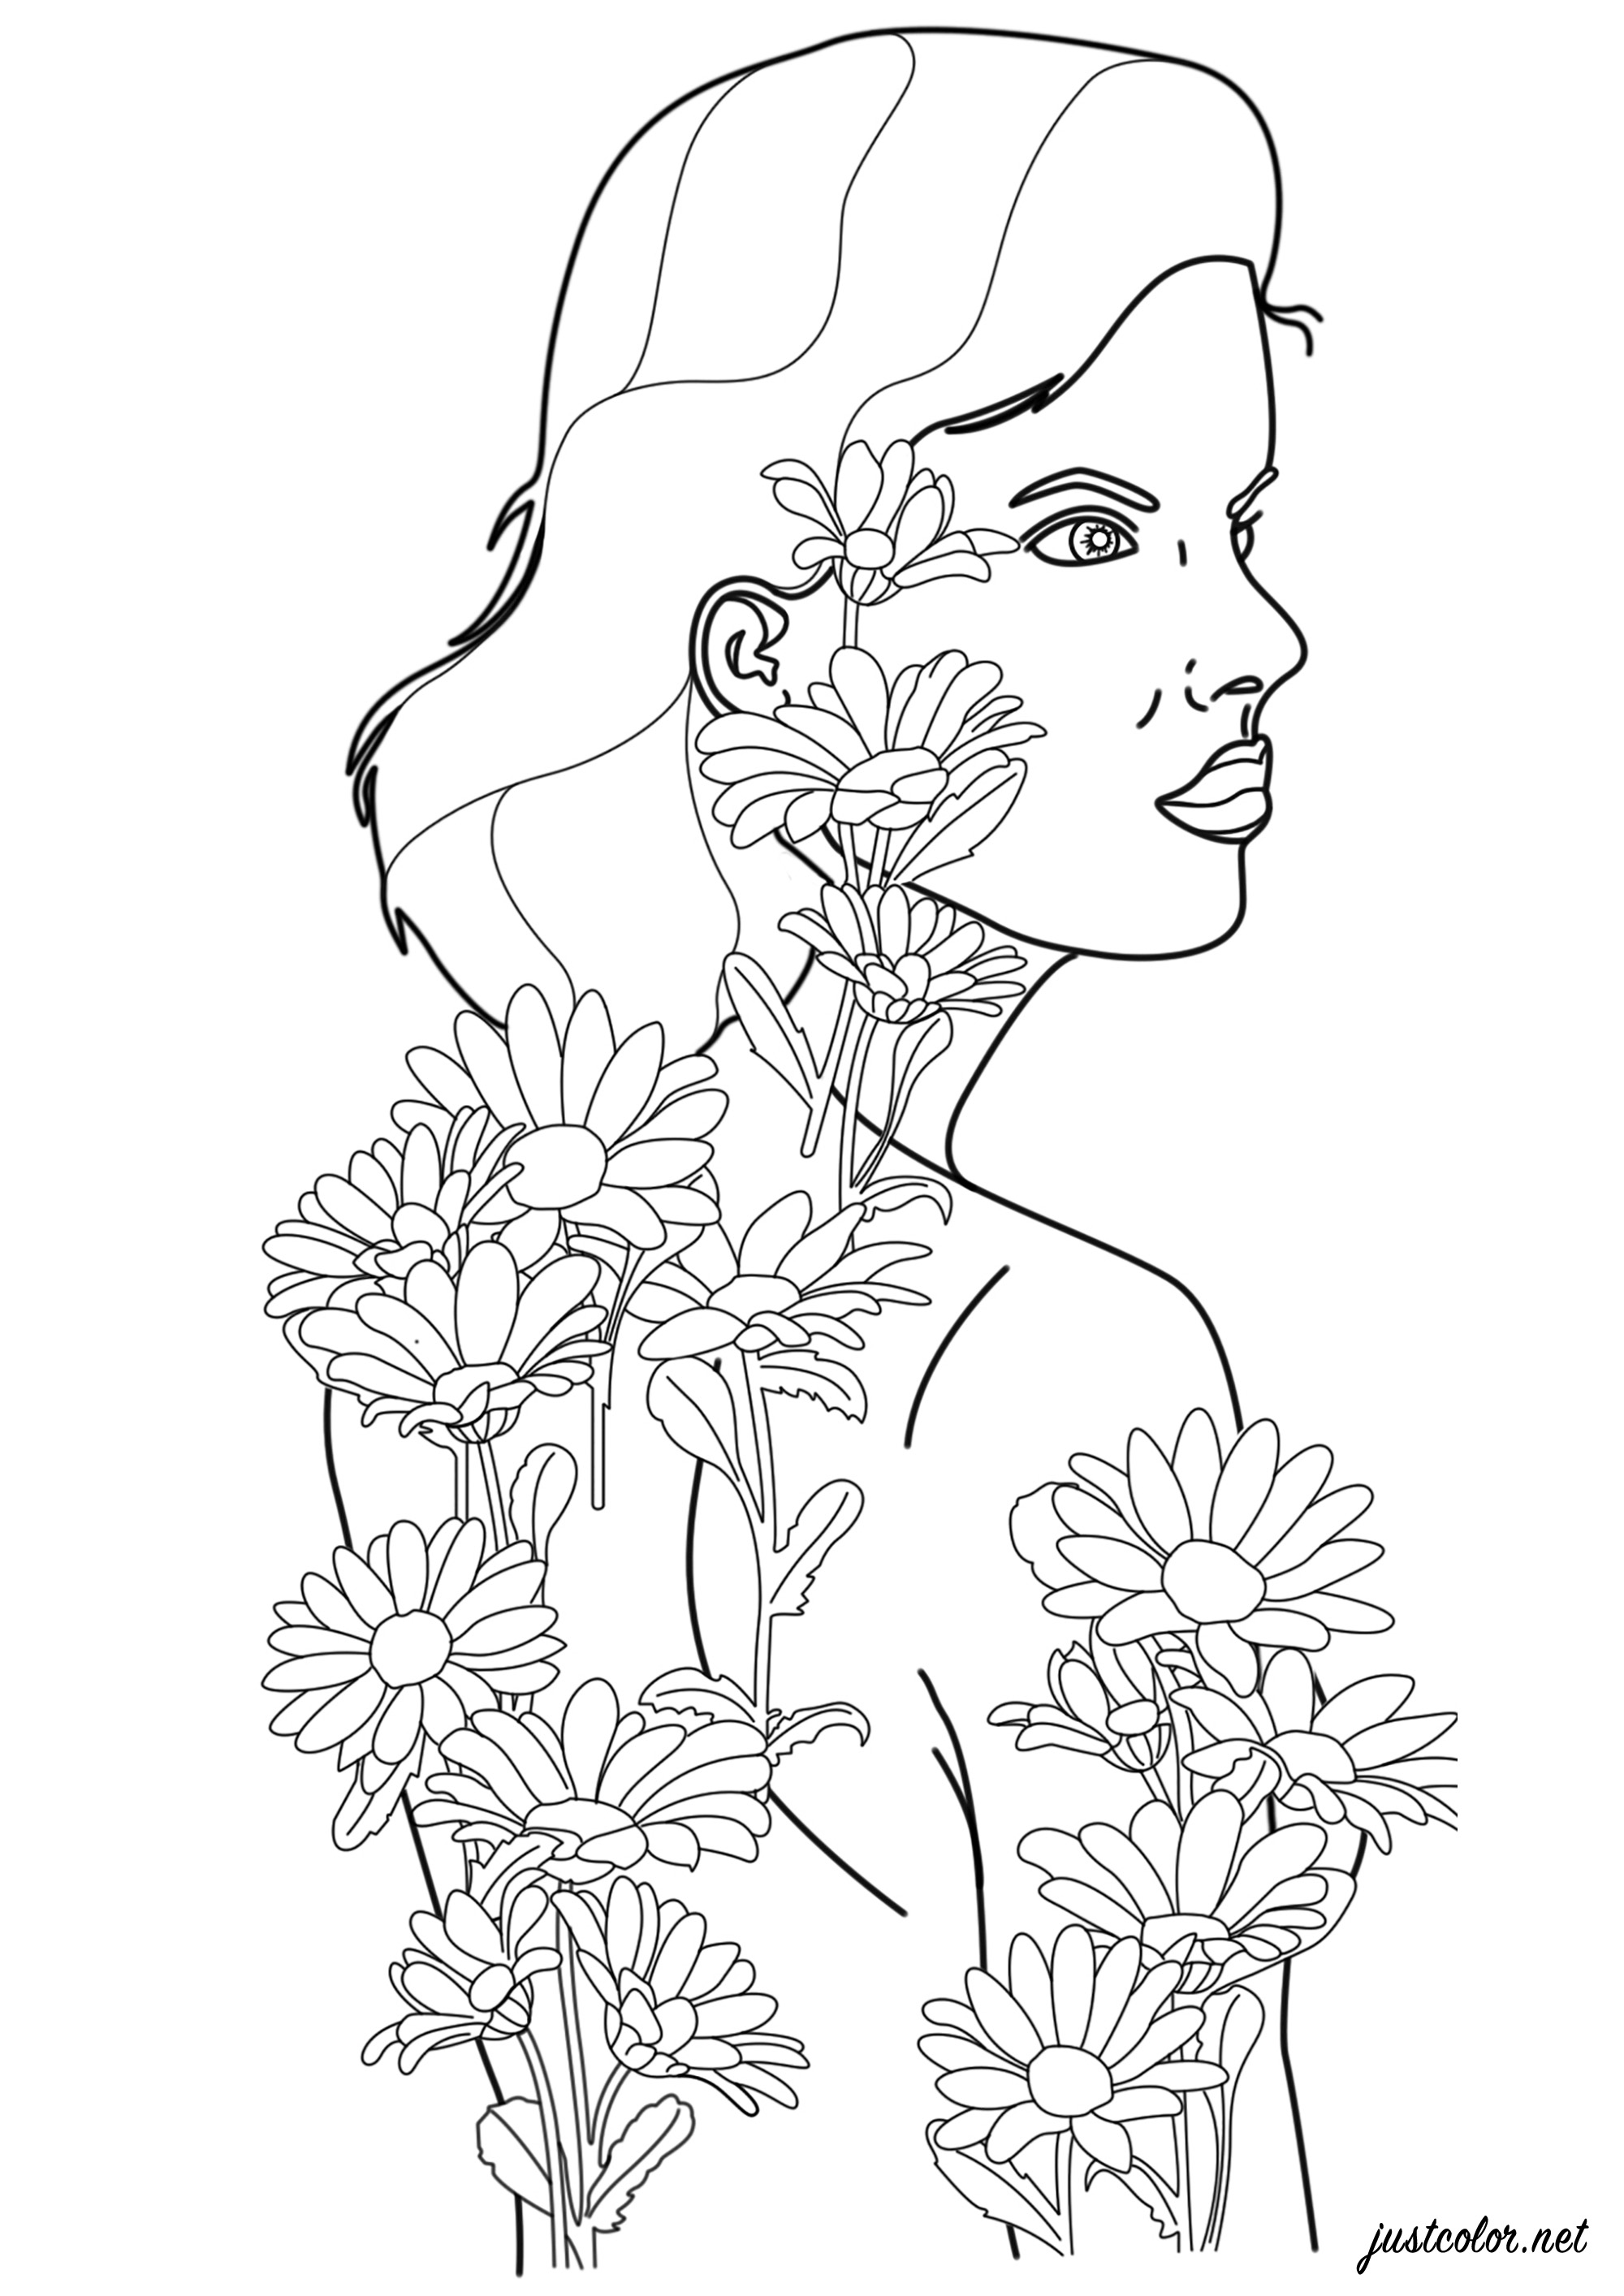 Mujer con tatuajes de flores que cobra vida y se hace real, Artista : Warrick